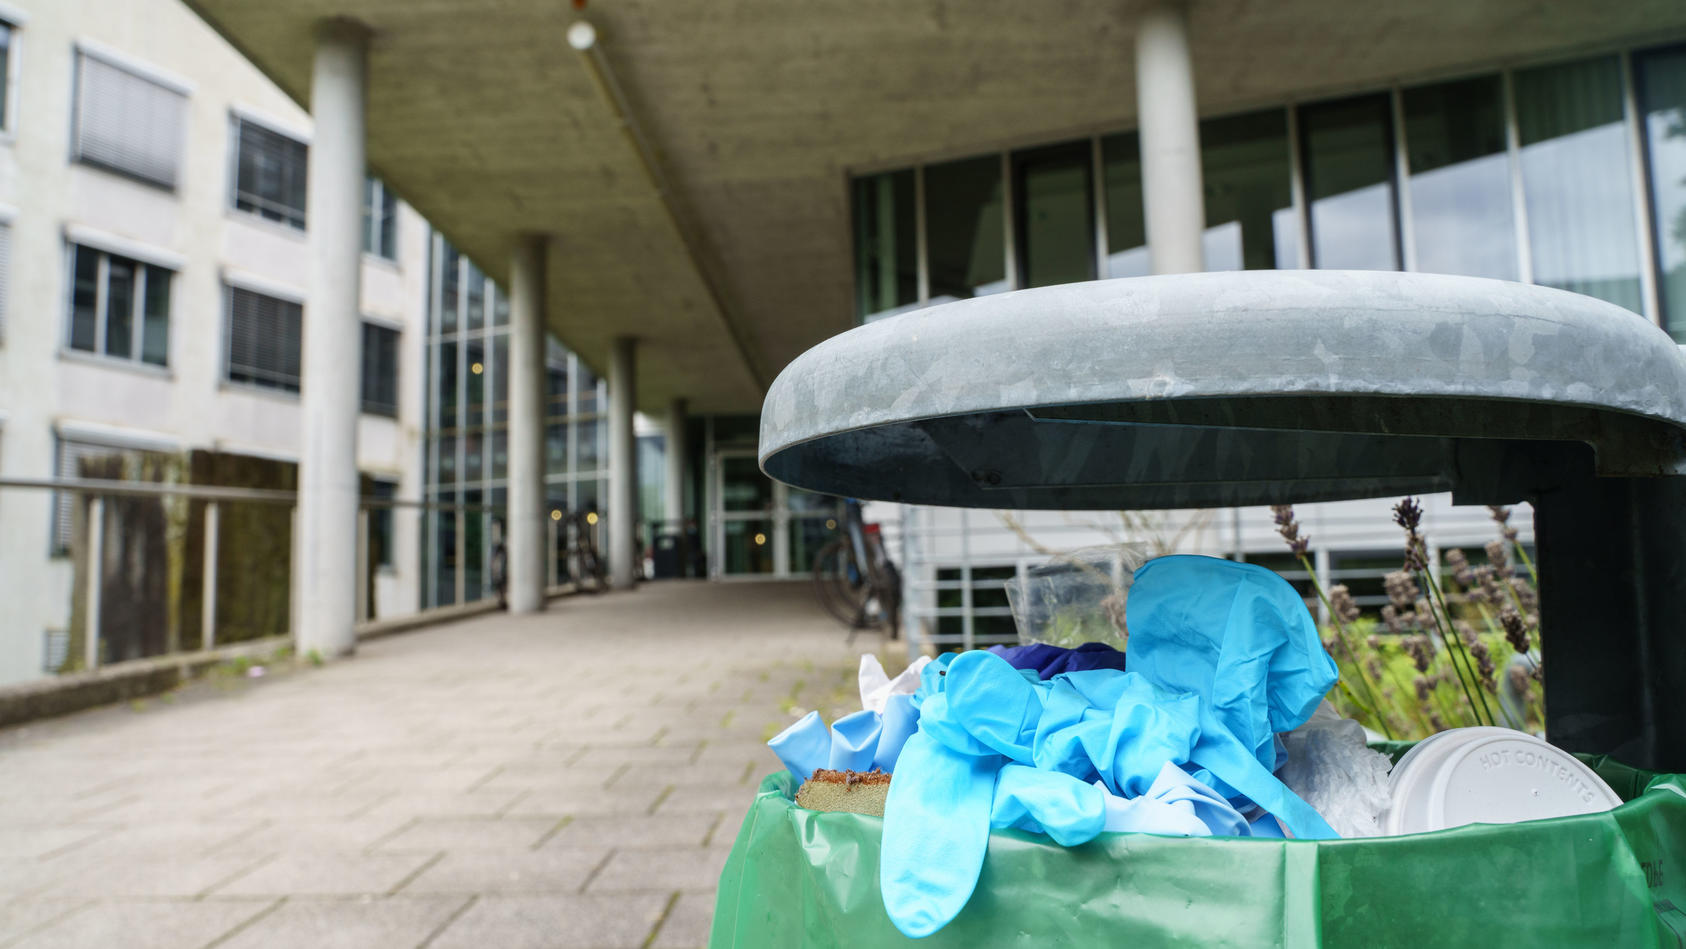 24.08.2021, Hessen, Darmstadt: Benutzte Einweg-Handschuhe liegen in einem Abfallbehälter vor dem Gebäude L201 auf dem Campus Lichtwiese der Technischen Universität (TU) Darmstadt. Am Tag zuvor waren hier sechs Menschen mit Vergiftungserscheinungen in